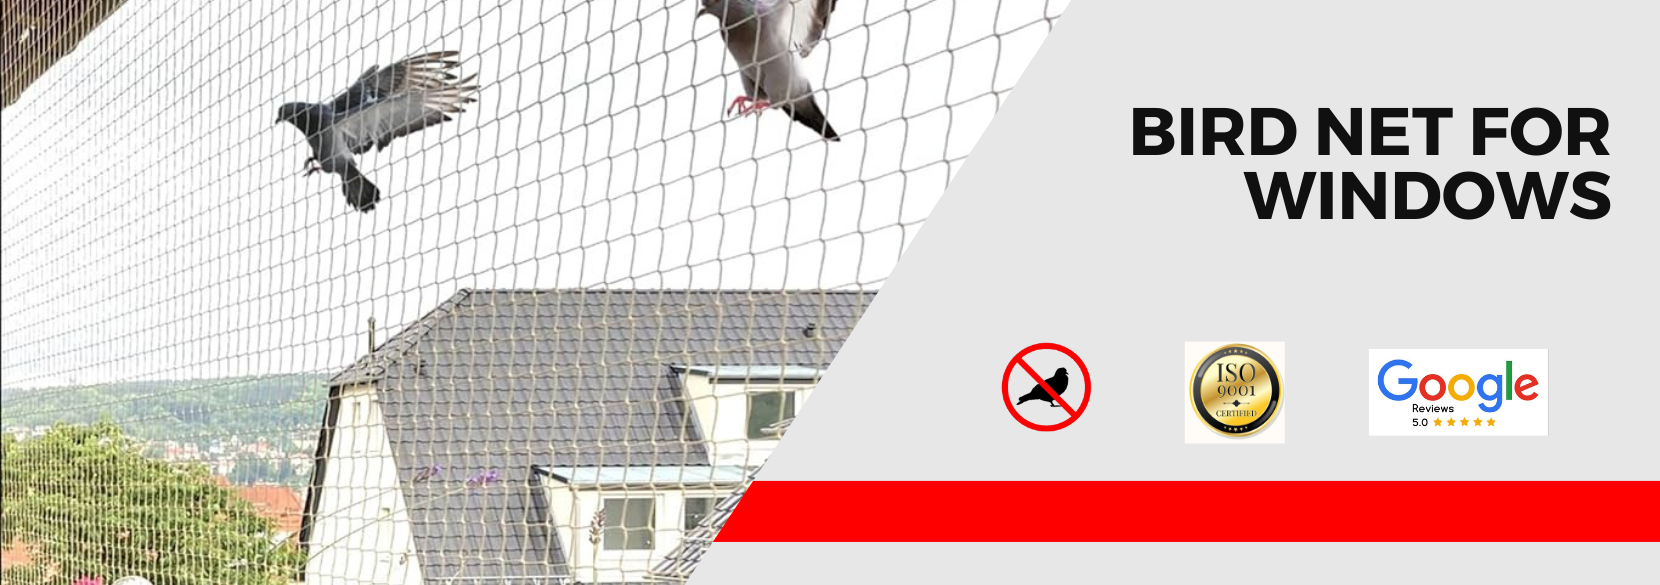 bird net for windows